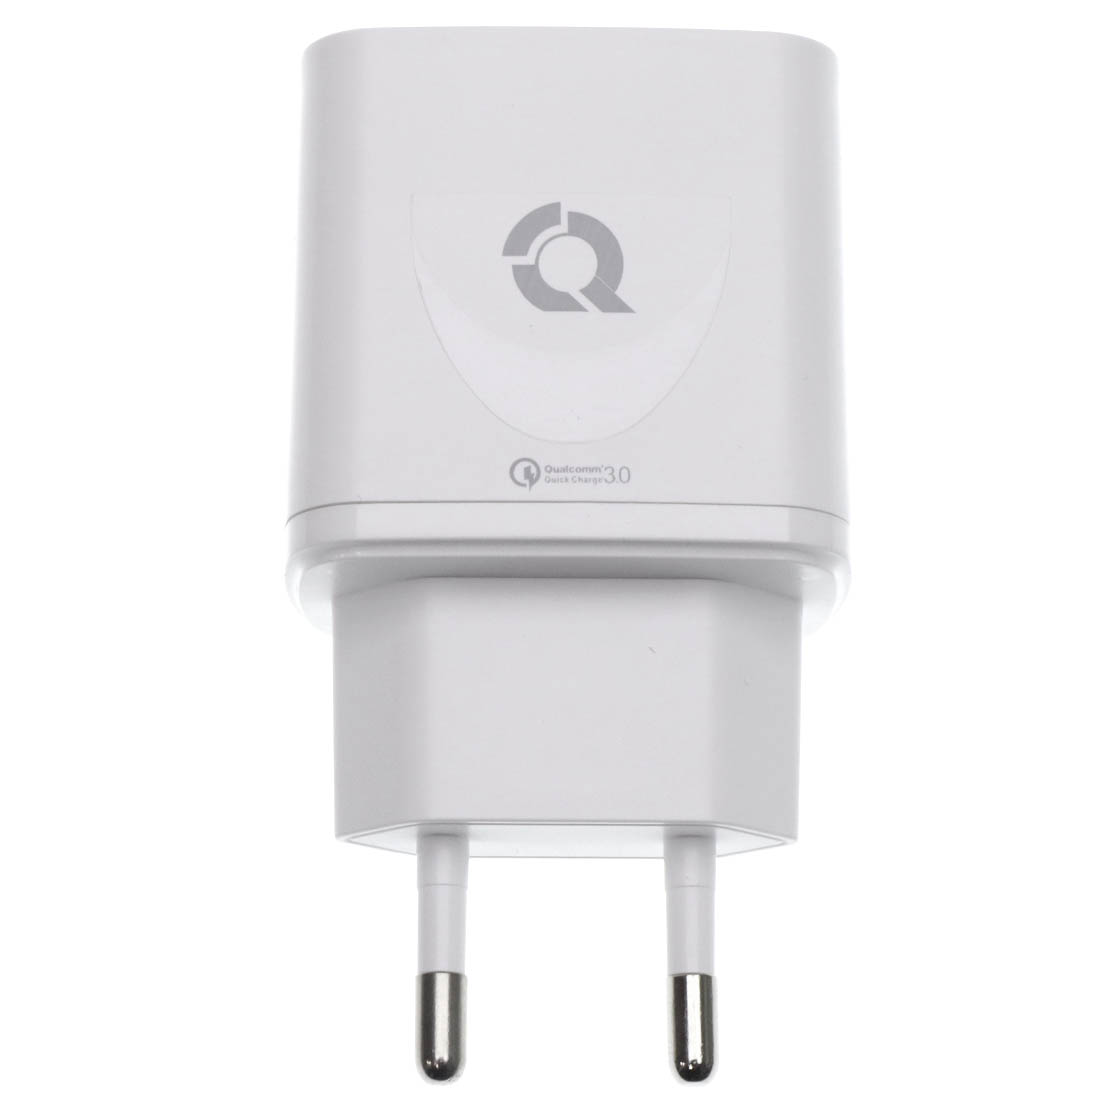 СЗУ (Сетевое зарядное устройство) QAYAN QHC-105, 18W, 1 USB, QC3.0, цвет белый